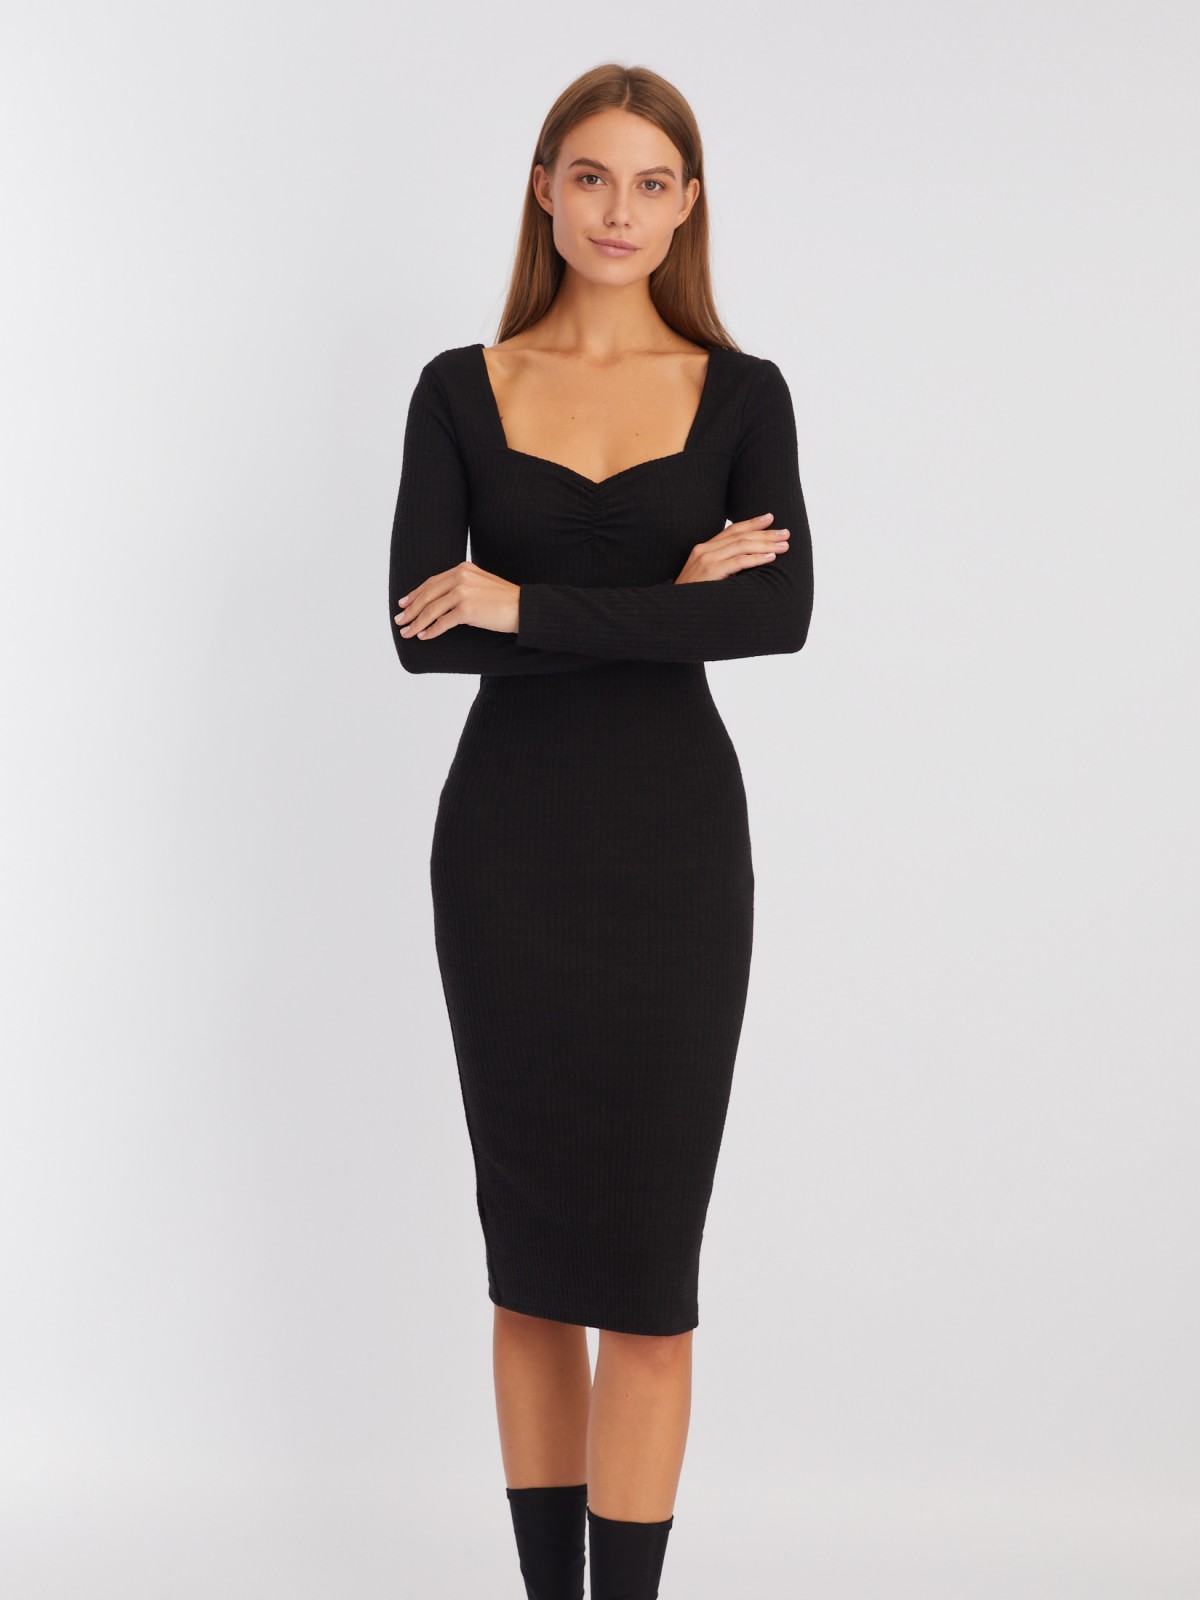 Трикотажное платье-лапша с вырезом и драпировкой на груди zolla 22342819F061, цвет черный, размер L